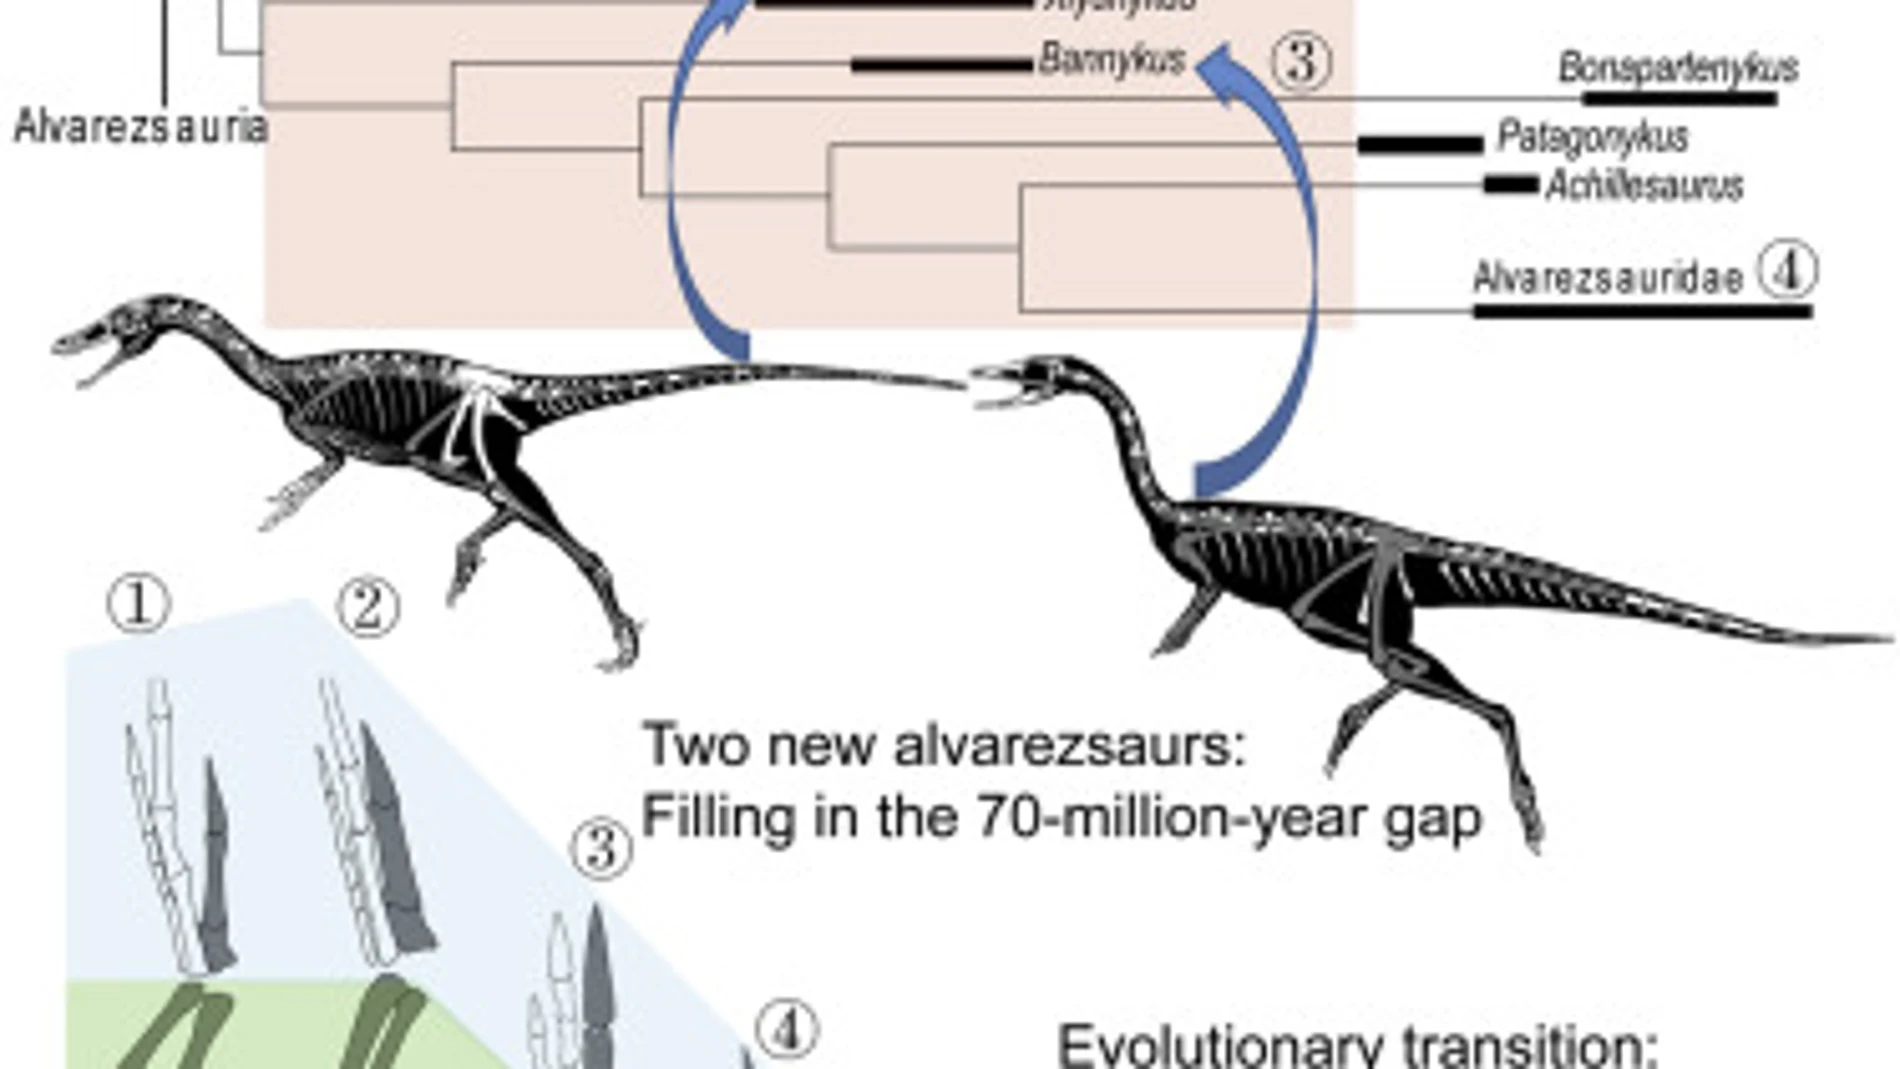 Los dos dinosaurios pueden rellenar una laguna de 70 millones de años en la evolución de estos animales